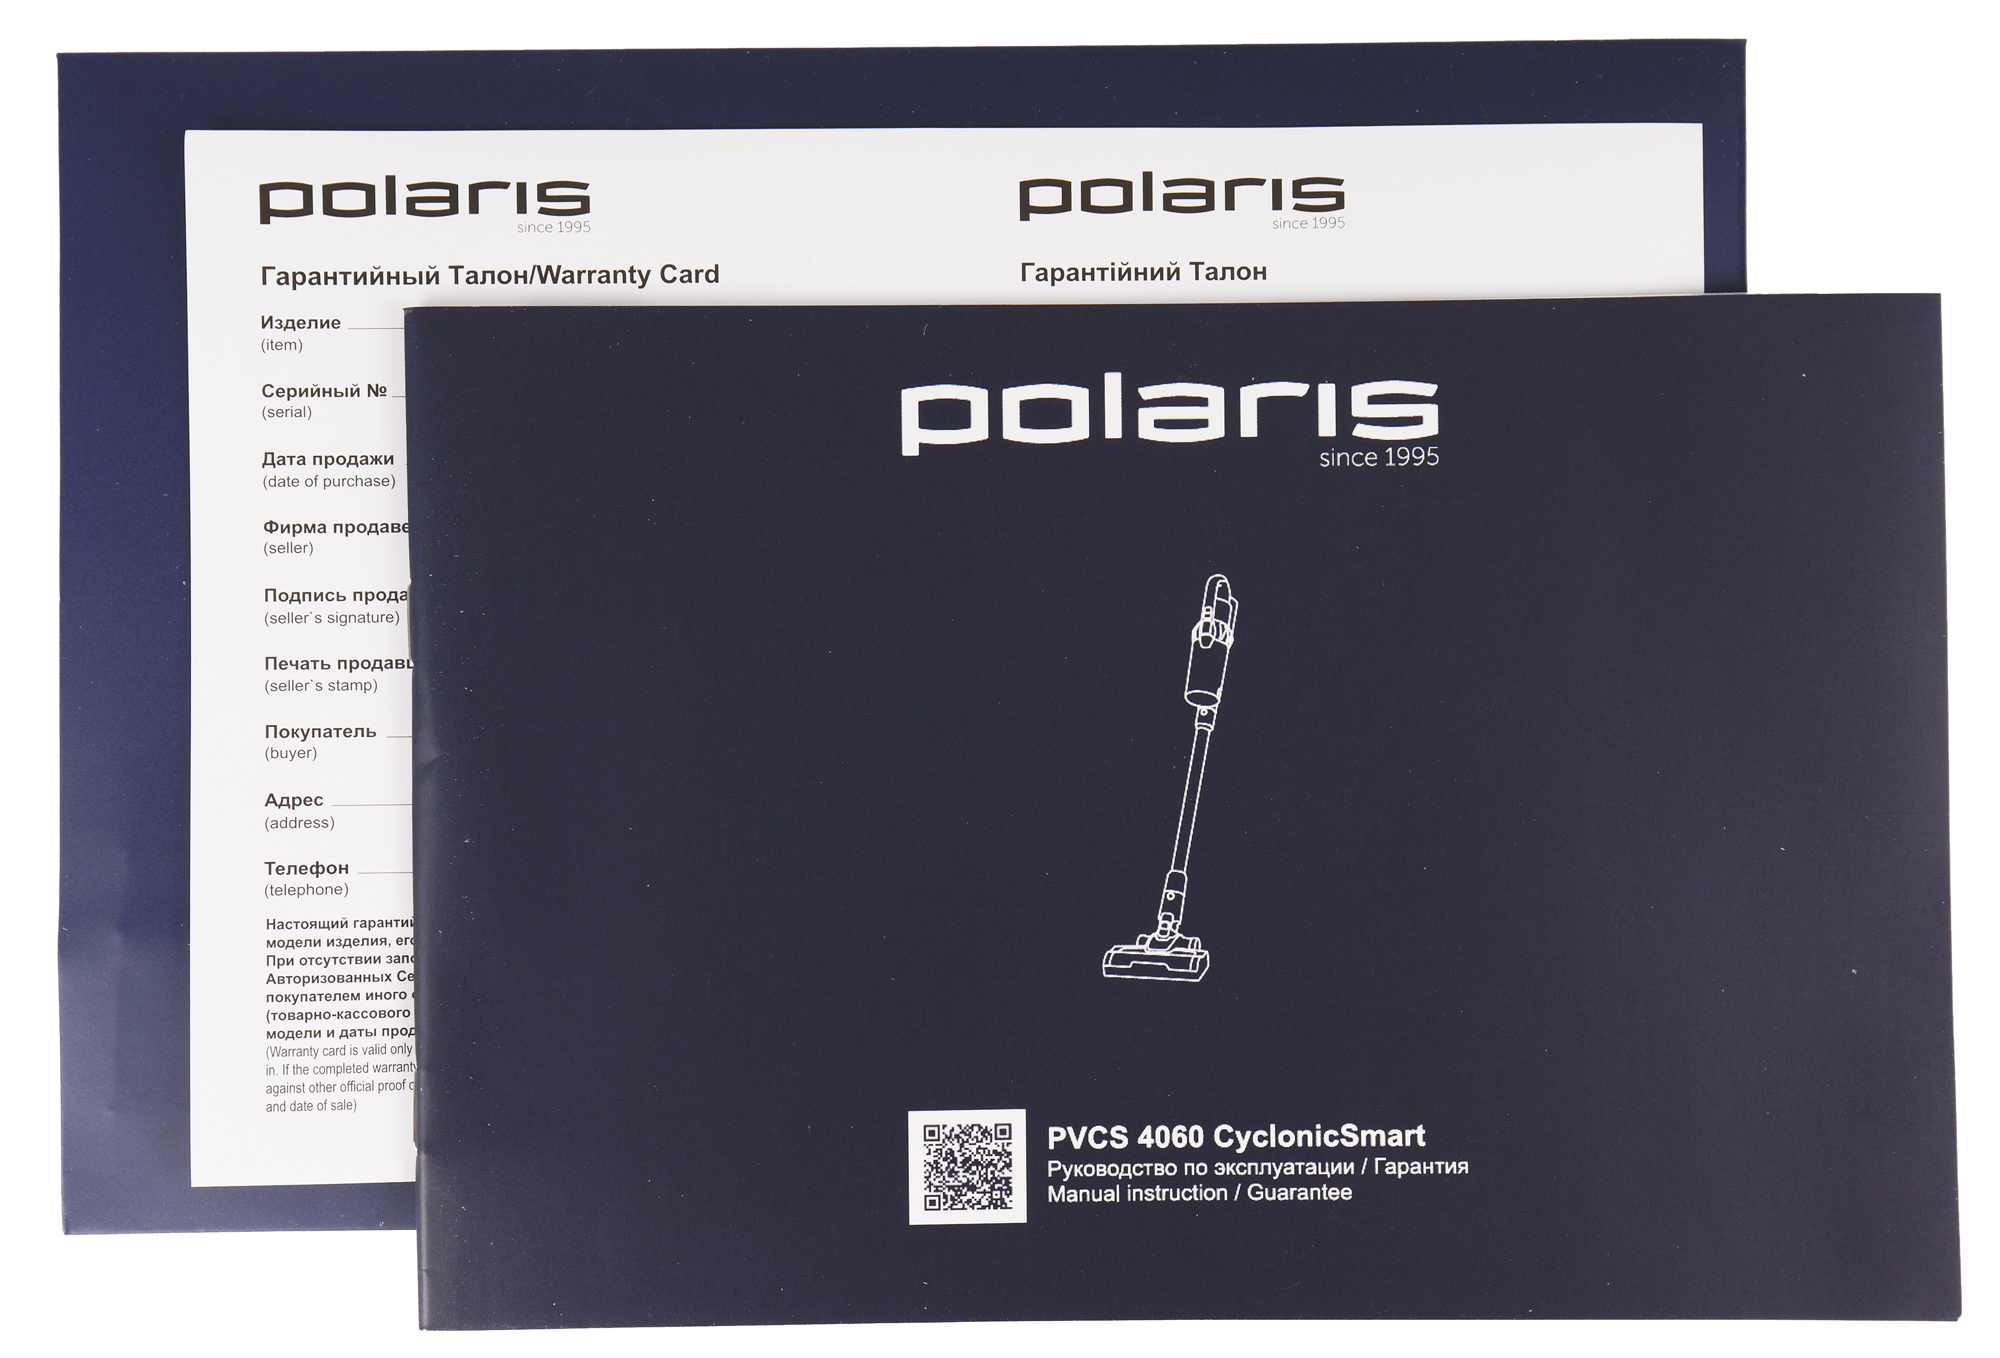 Вертикальный пылесос polaris pvcs 6000. Polaris PVCS 4060 детали. Polaris PVCS 4060 Cyclonic Smart мотор. Polaris PVCS 4060 фильтр. Olaris PVCS 4060 cyclonicsmart фильтр.